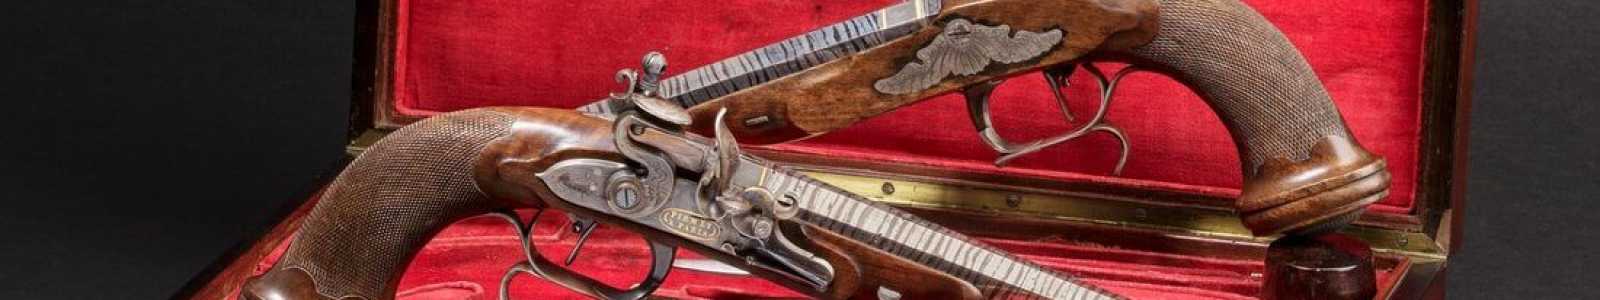 A82s - Schusswaffen aus fünf Jahrhunderten